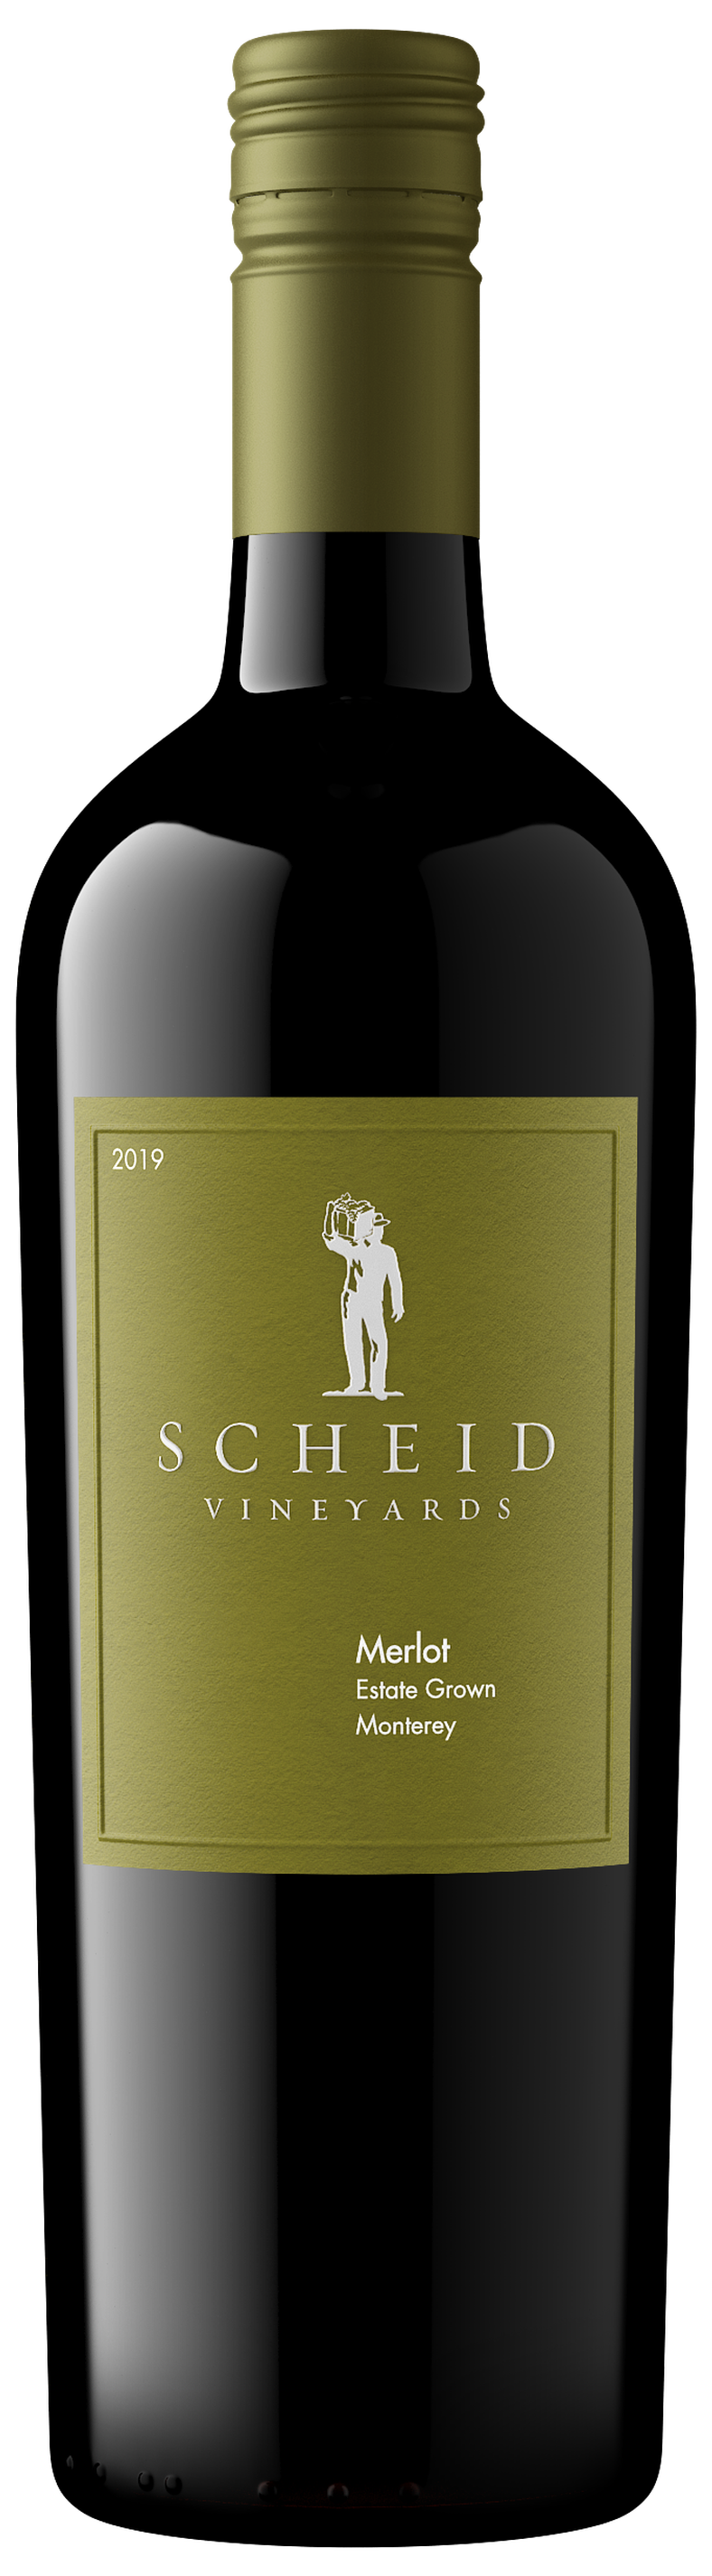 Scheid 2019 Products - Merlot - Vineyards